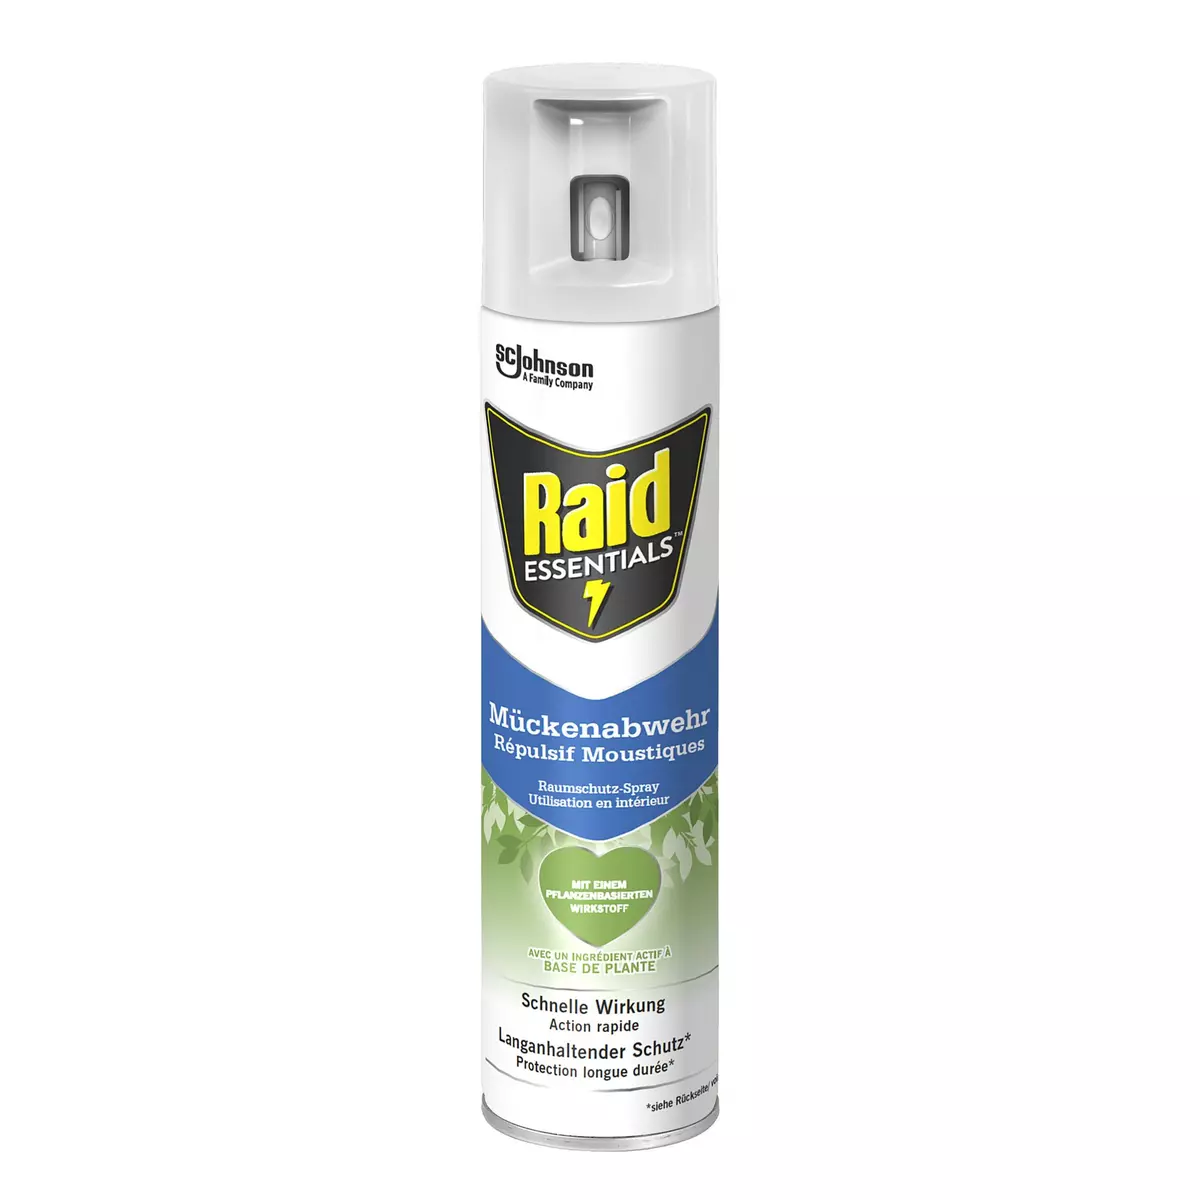 RAID Essentials spray répulsif anti moustiques 300ml pas cher 